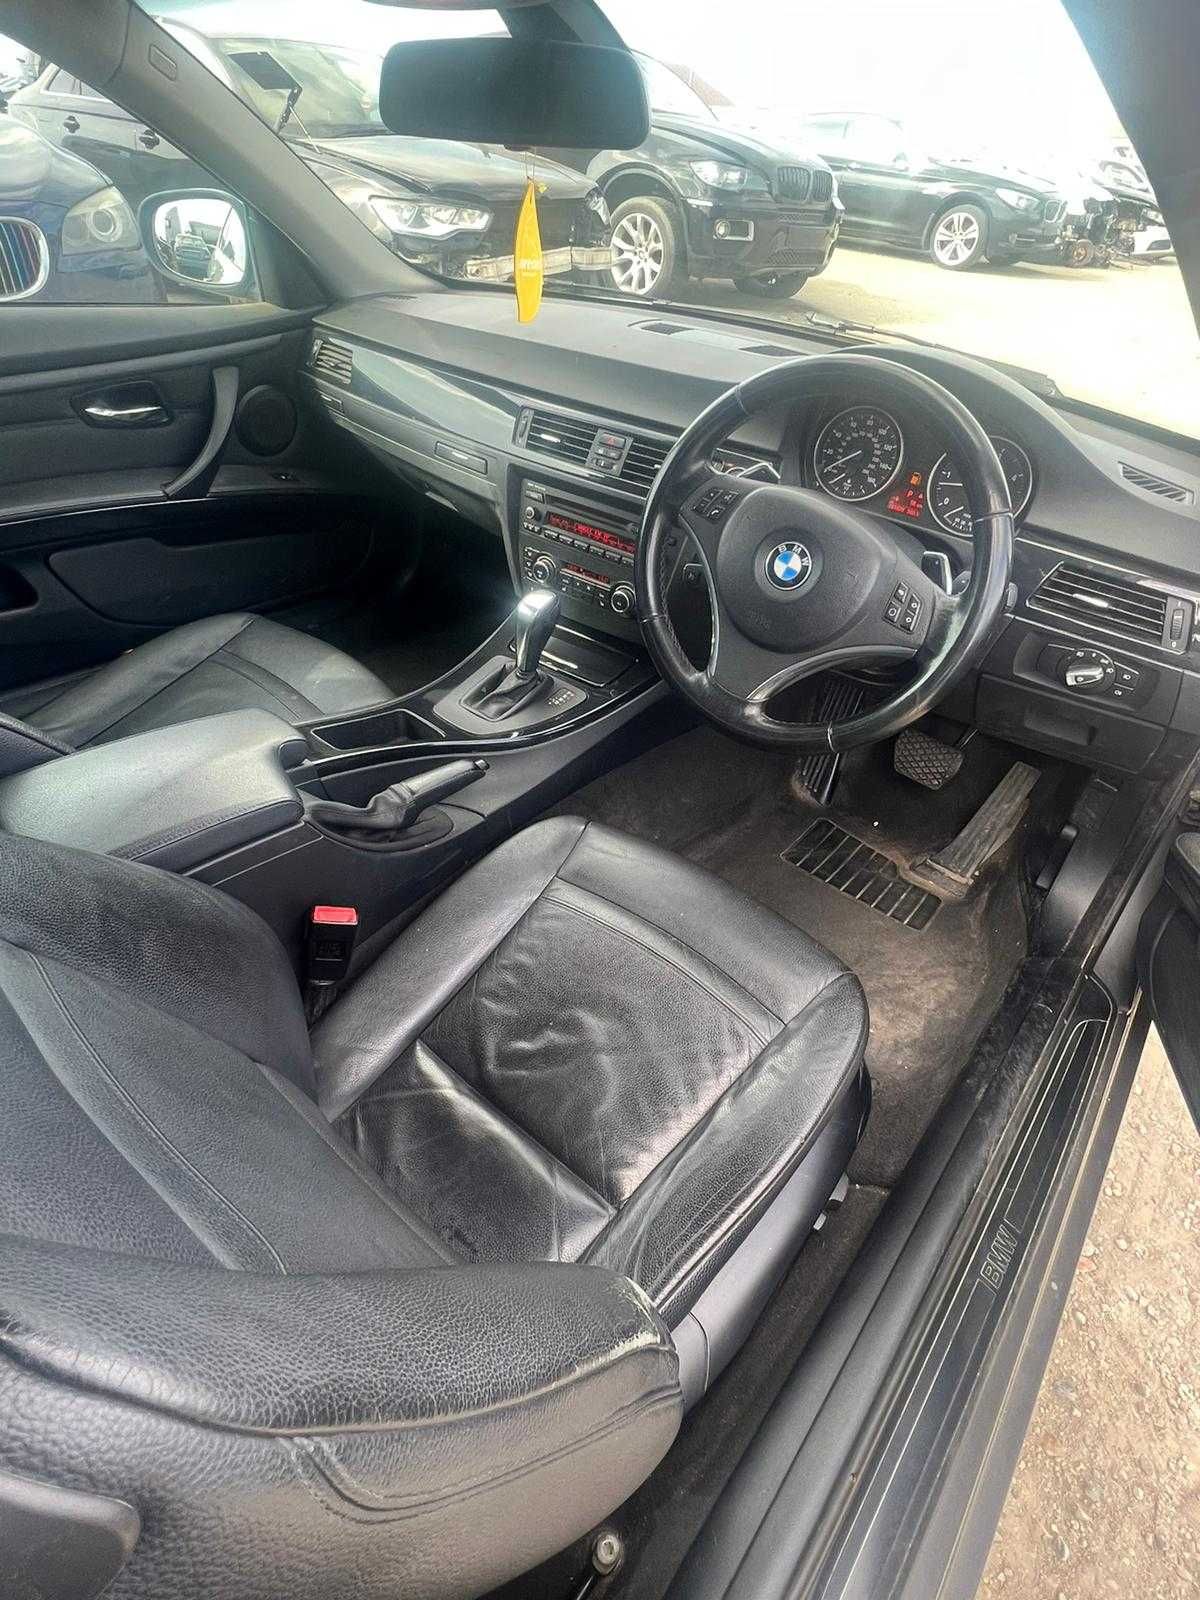 Dezmembram BMW E92 coupe, facelift, 330d N57, 245 cai, euro5, M pachet